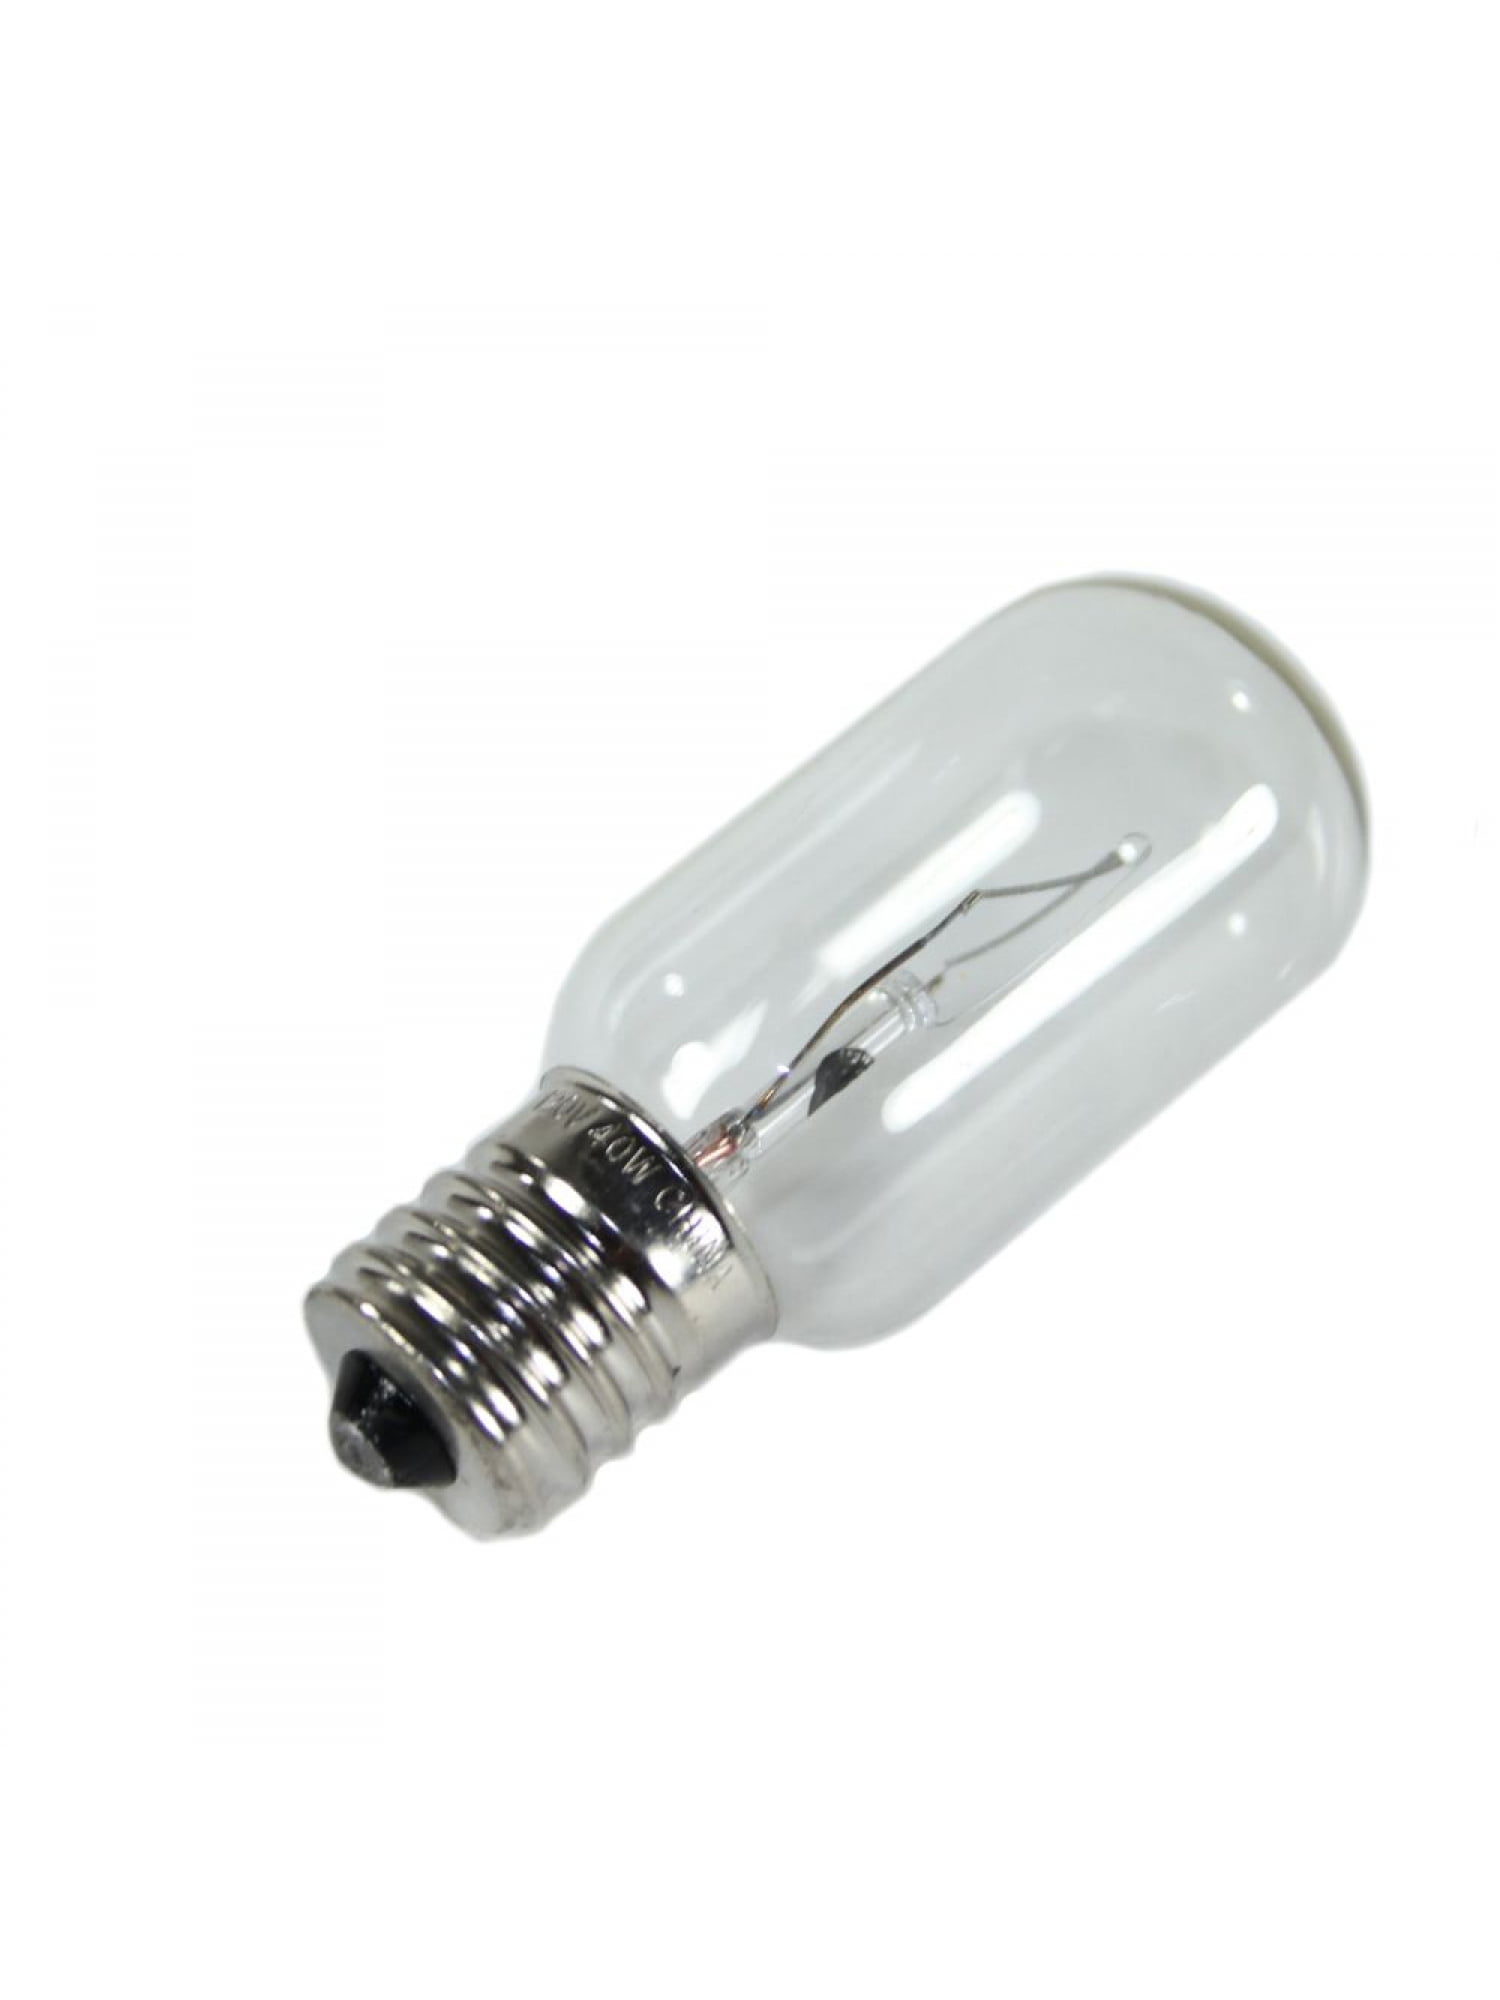 Light Bulb For Frigidaire Refrigerator - How To Blog